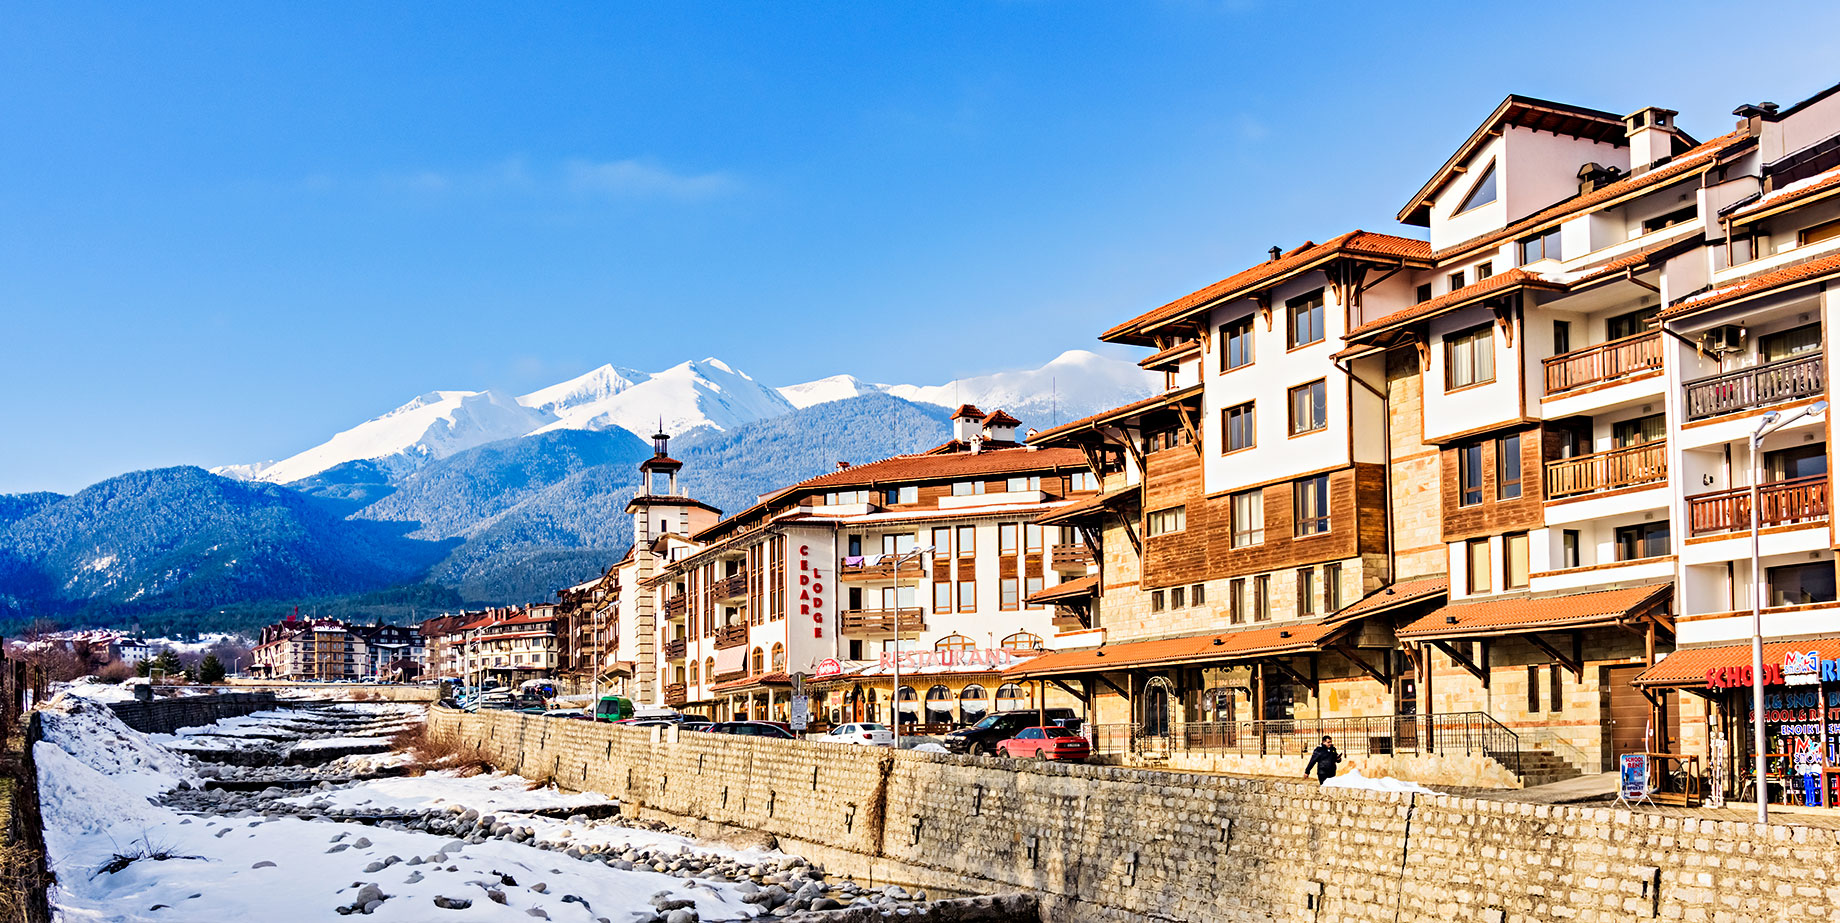 Pirin Mountains Ski Resort - Bansko, Bulgaria